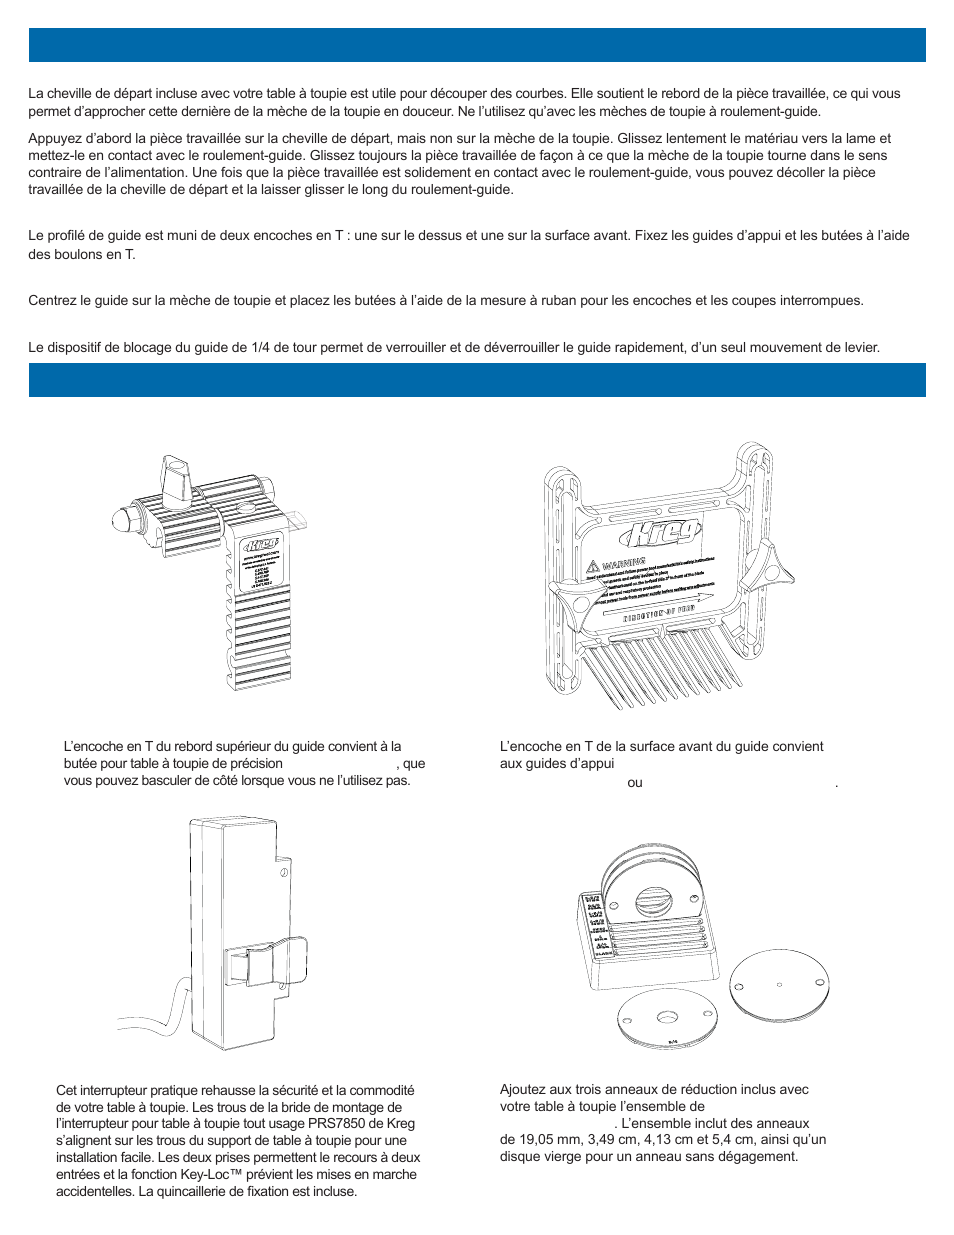 Utilisation de votre table à toupie, Accessoires kreg en option | Kreg PRS2100 Precision Benchtop Router Table User Manual | Page 19 / 28